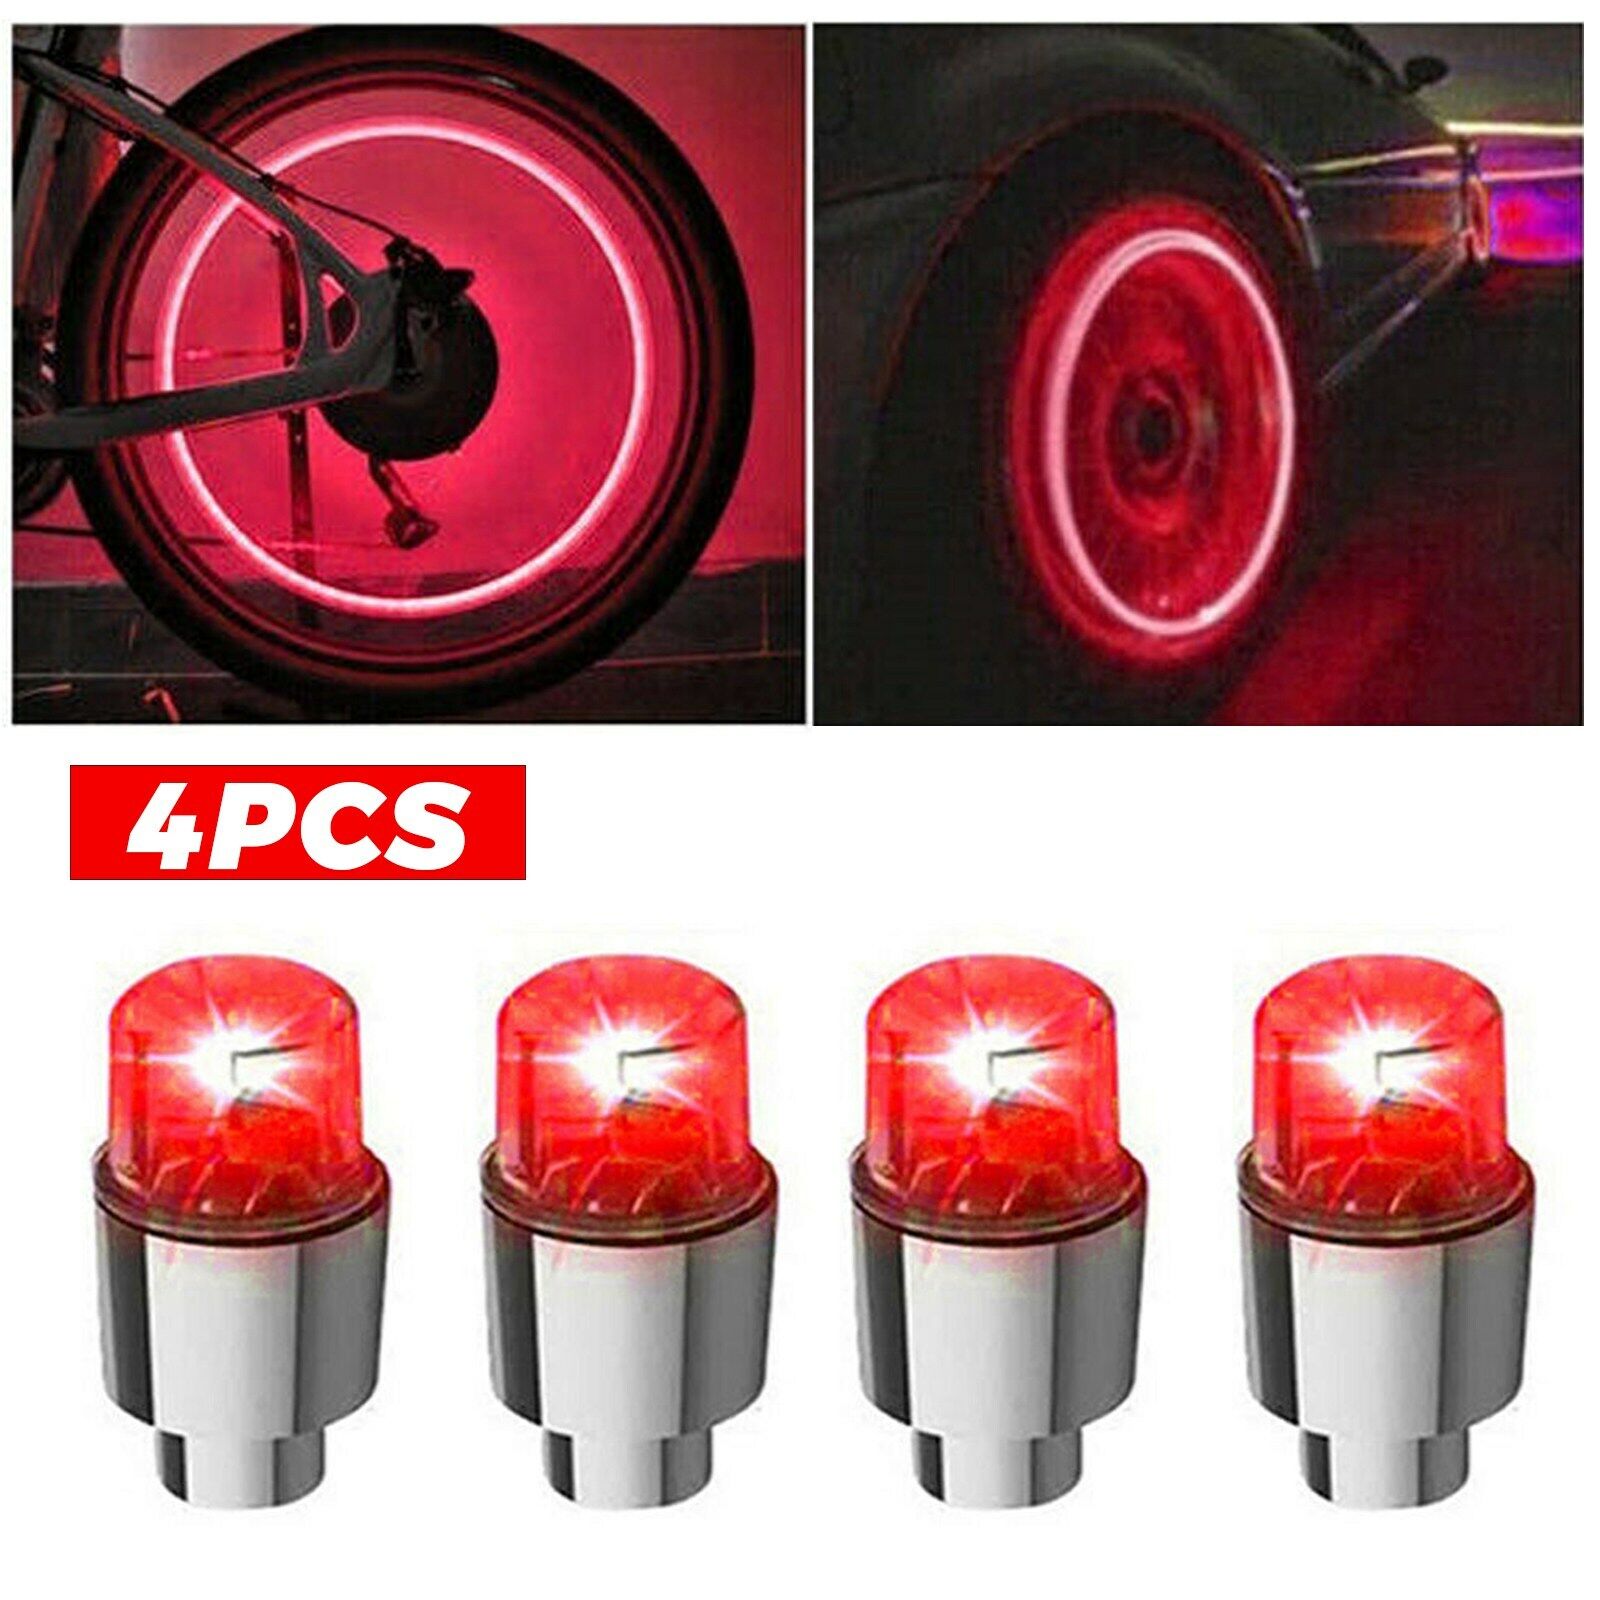 4PCS Car Auto Wheel Tire Tyre Air Valve Stem LED Light Cap Cover Accessories Top